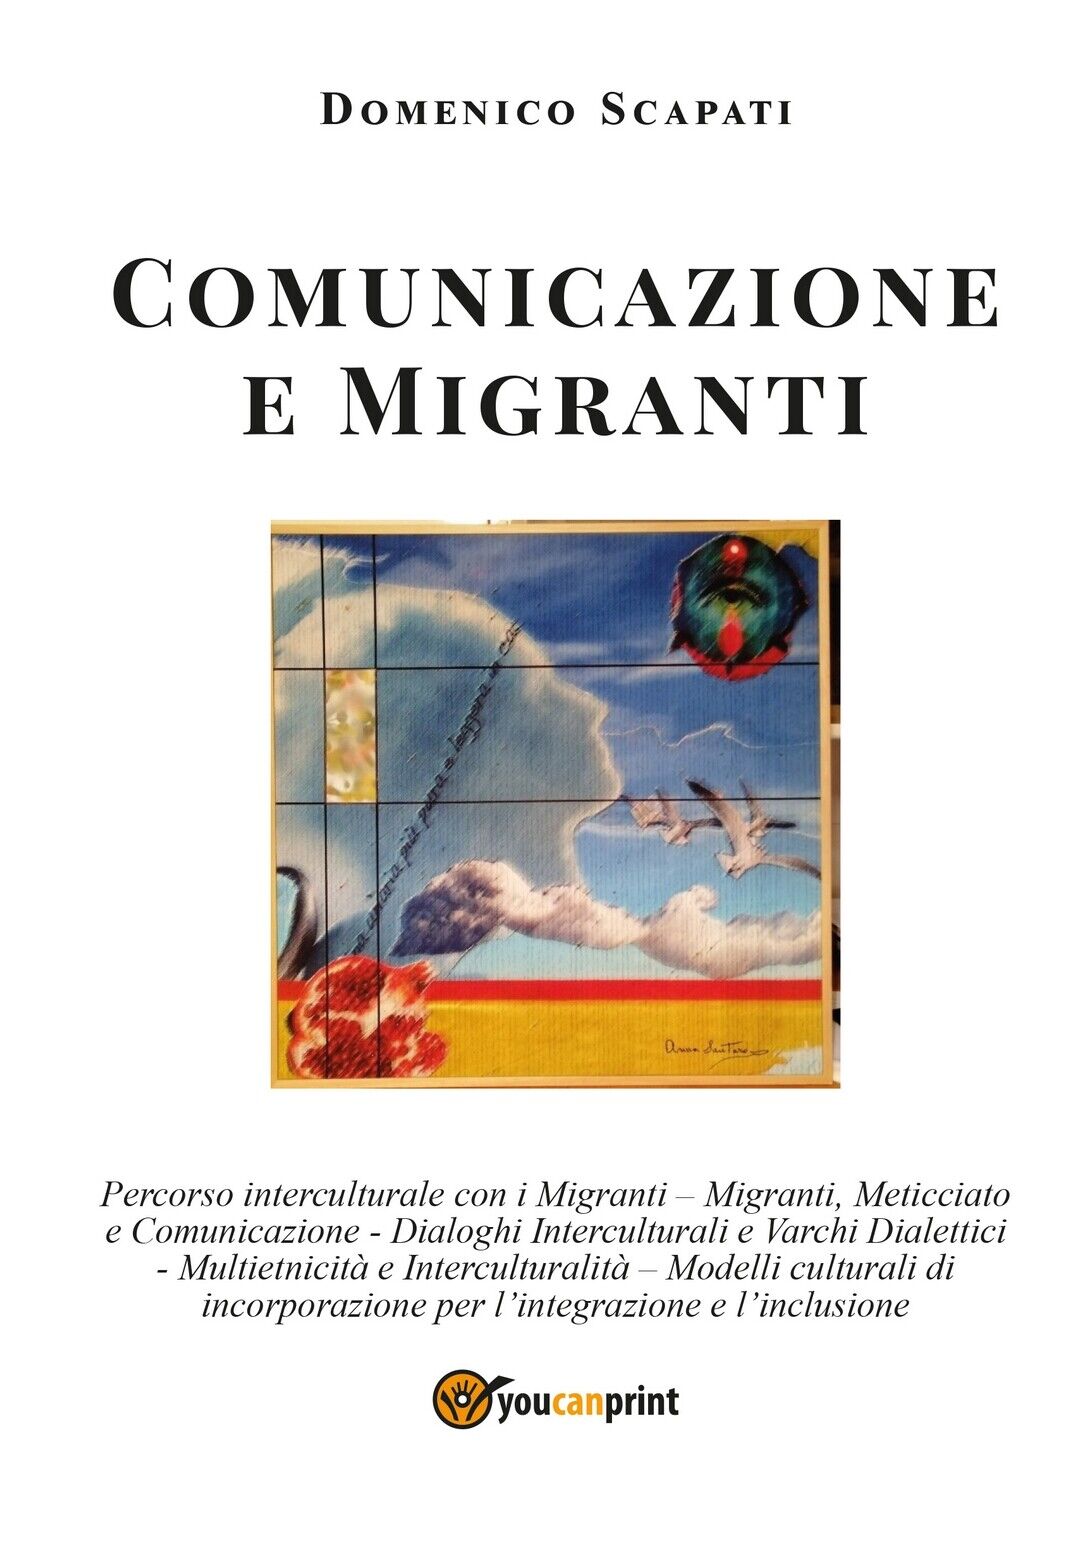 Comunicazione e Migranti  di Domenico Scapati,  2020,  Youcanprint libro usato